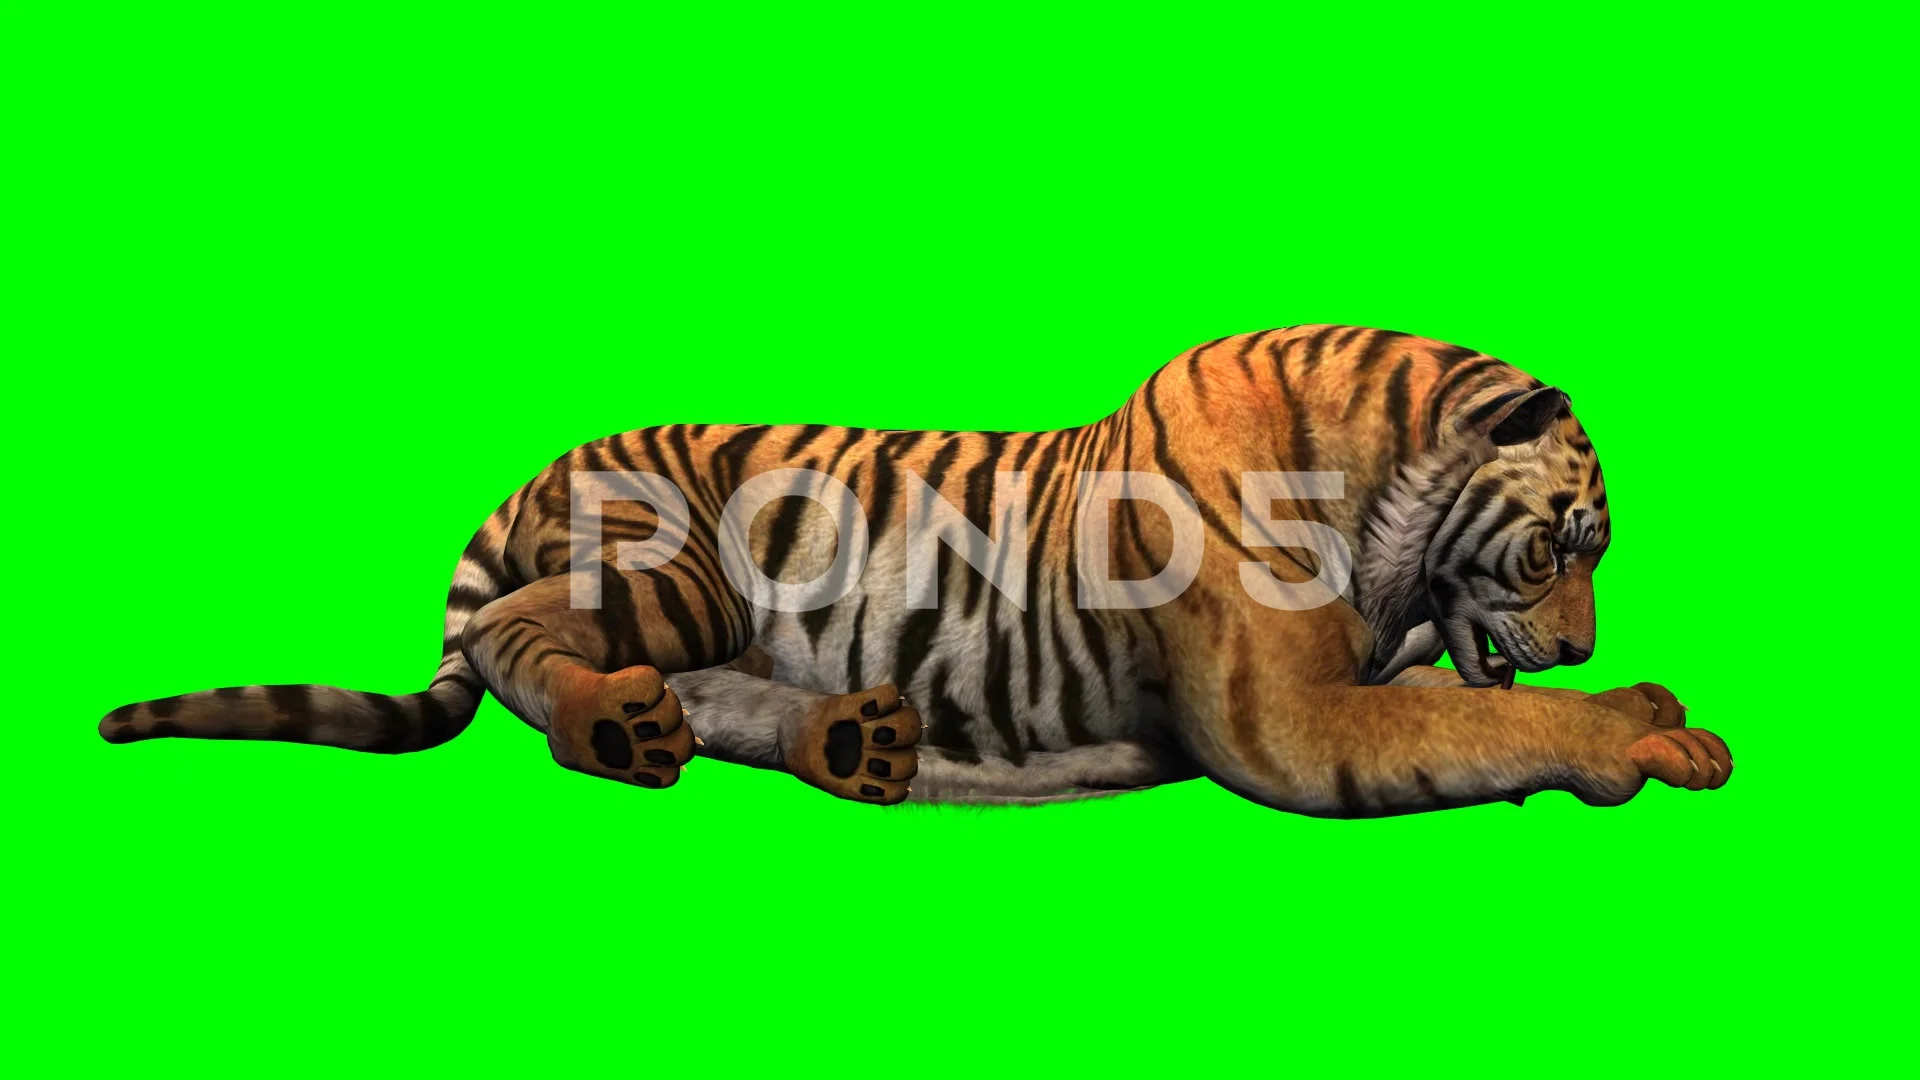 Hình ảnh Tiger animation Green screen chắc chắn sẽ khiến bạn say mê và hào hứng. Hãy xem và cảm nhận sức mạnh của chú hổ trên phông nền xanh.